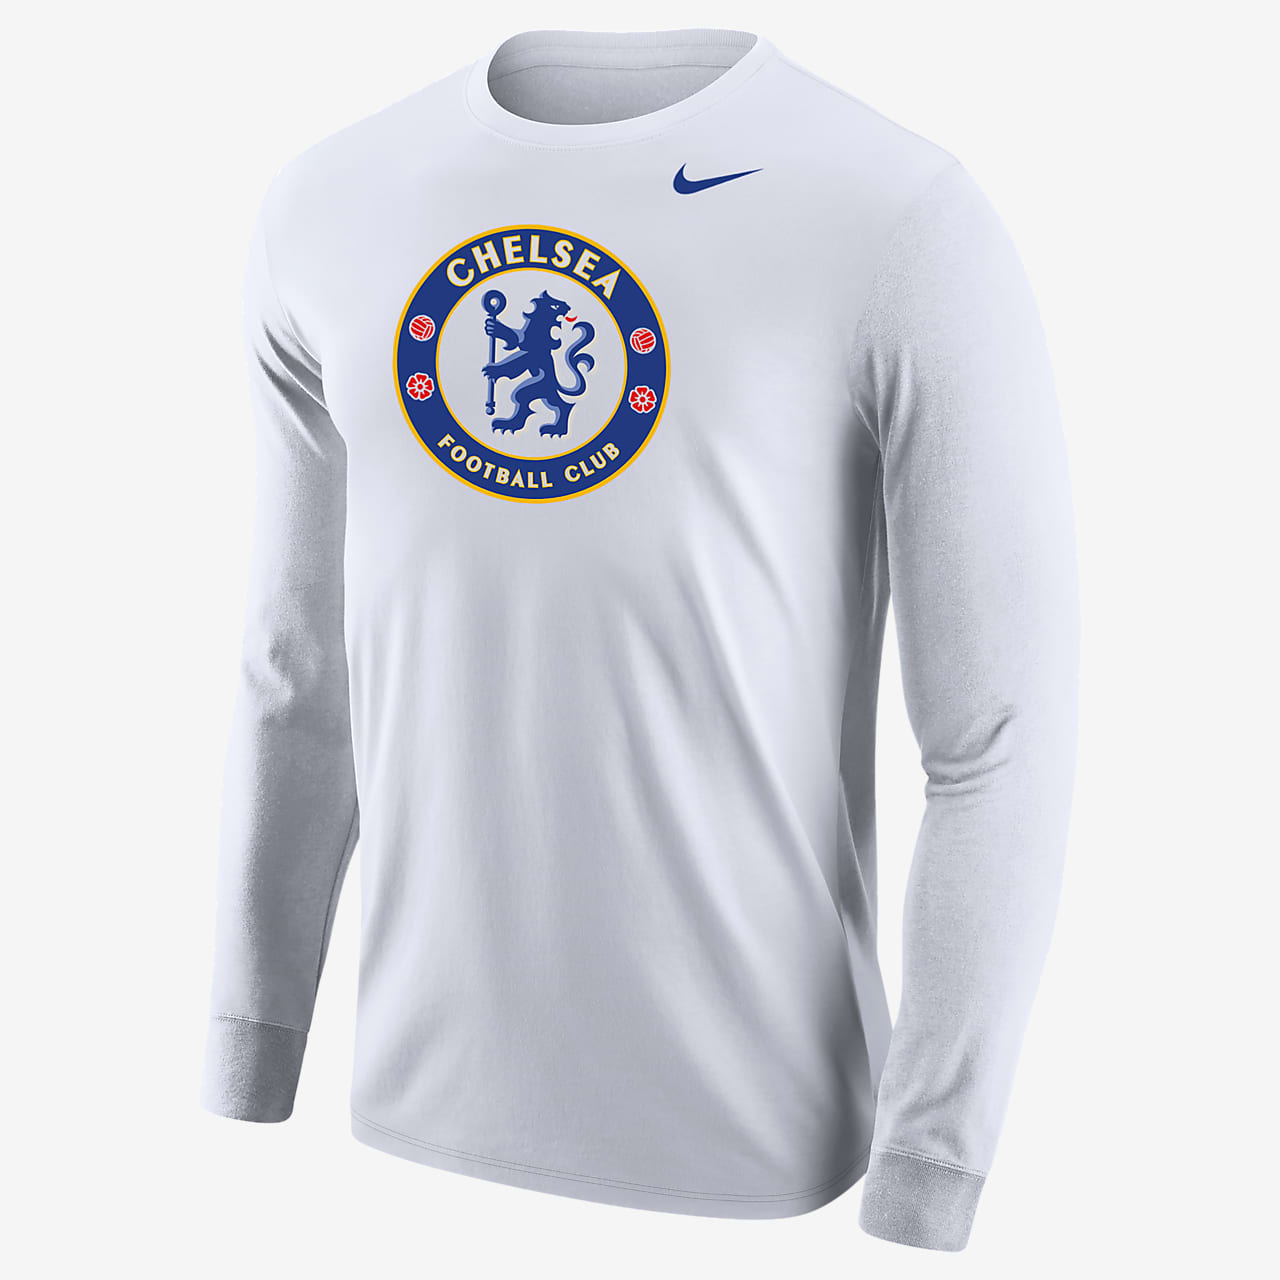 Chelsea Men's Long-Sleeve T-Shirt.